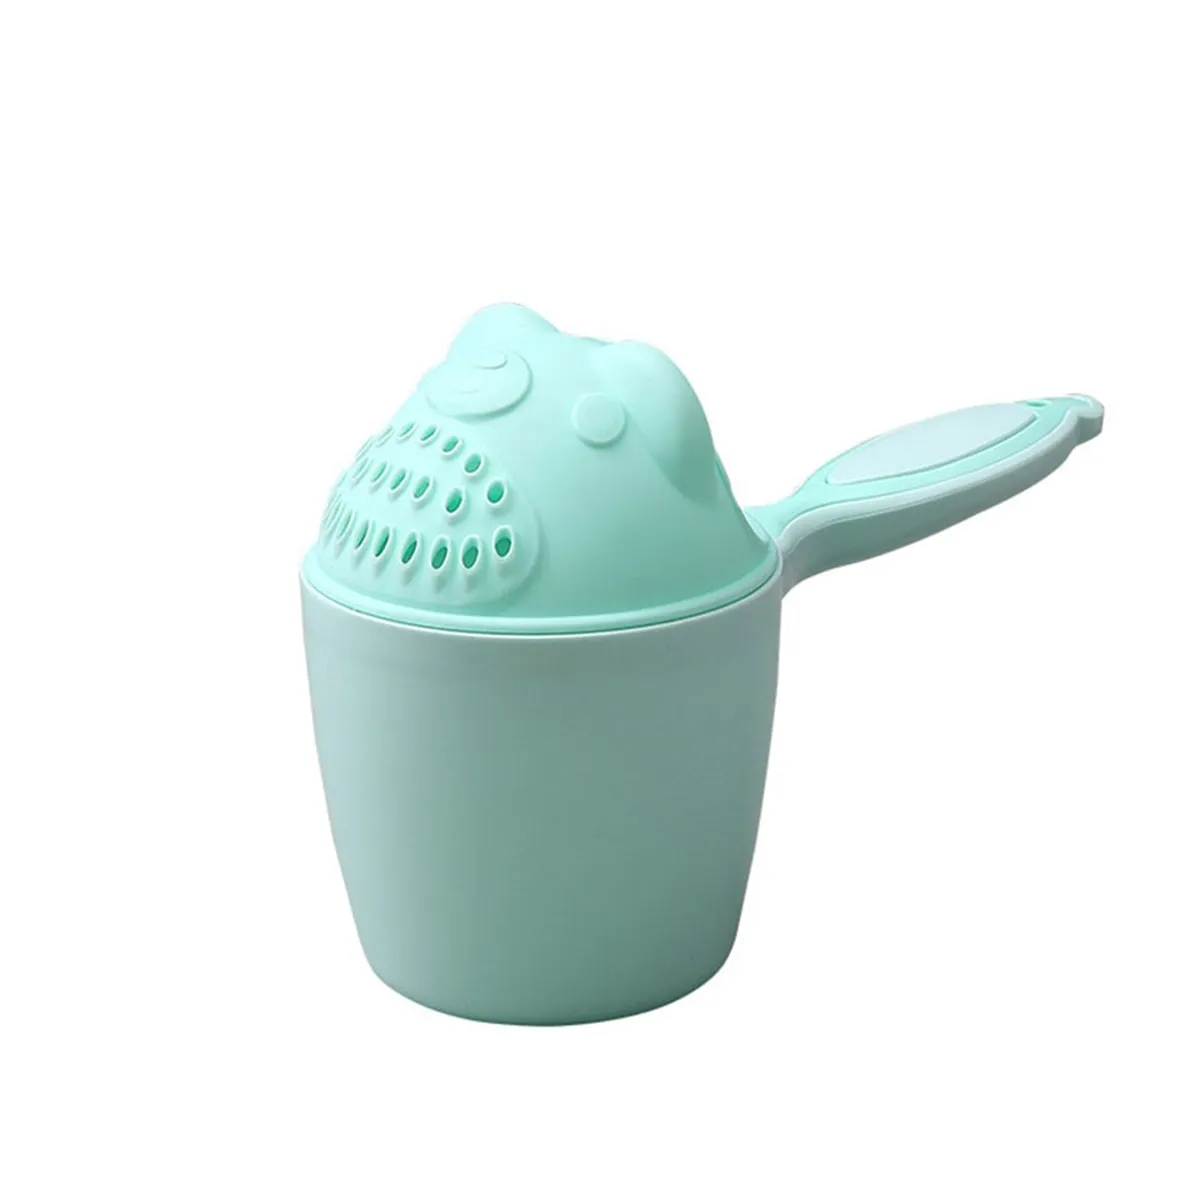 Baby-Badewanne Dusche praktische Spülung Tasse Wasch Dusche Shampoo Kopf niedliches Baby Geschenk Türkis big image 1